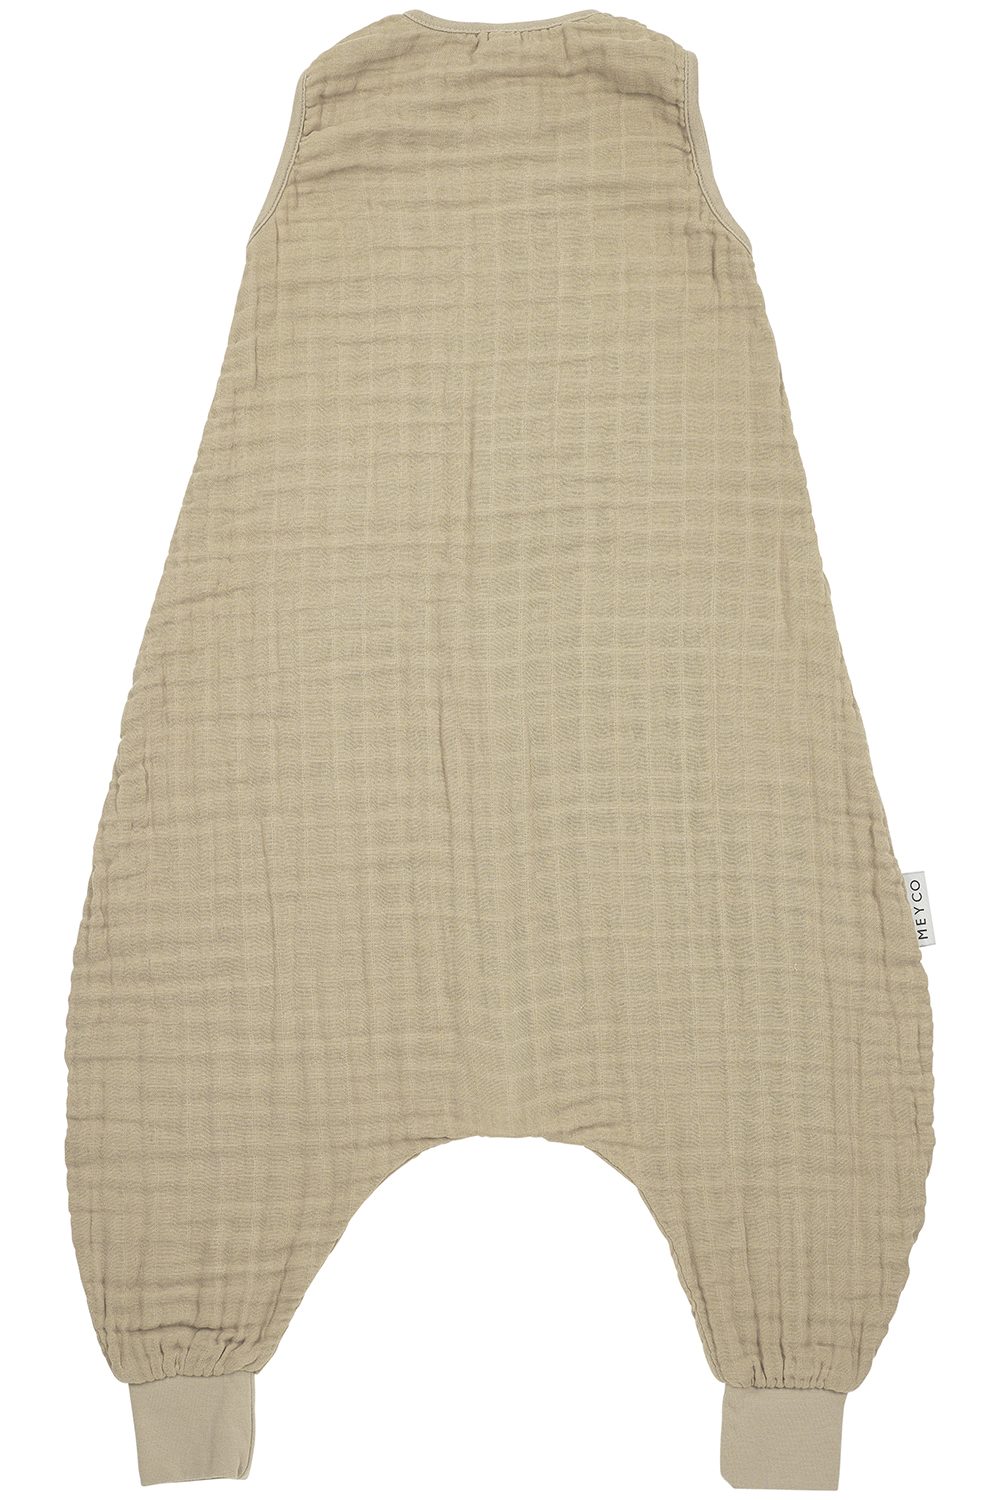 Baby zomer slaapoverall jumper pre-washed hydrofiel Uni - sand - 92cm